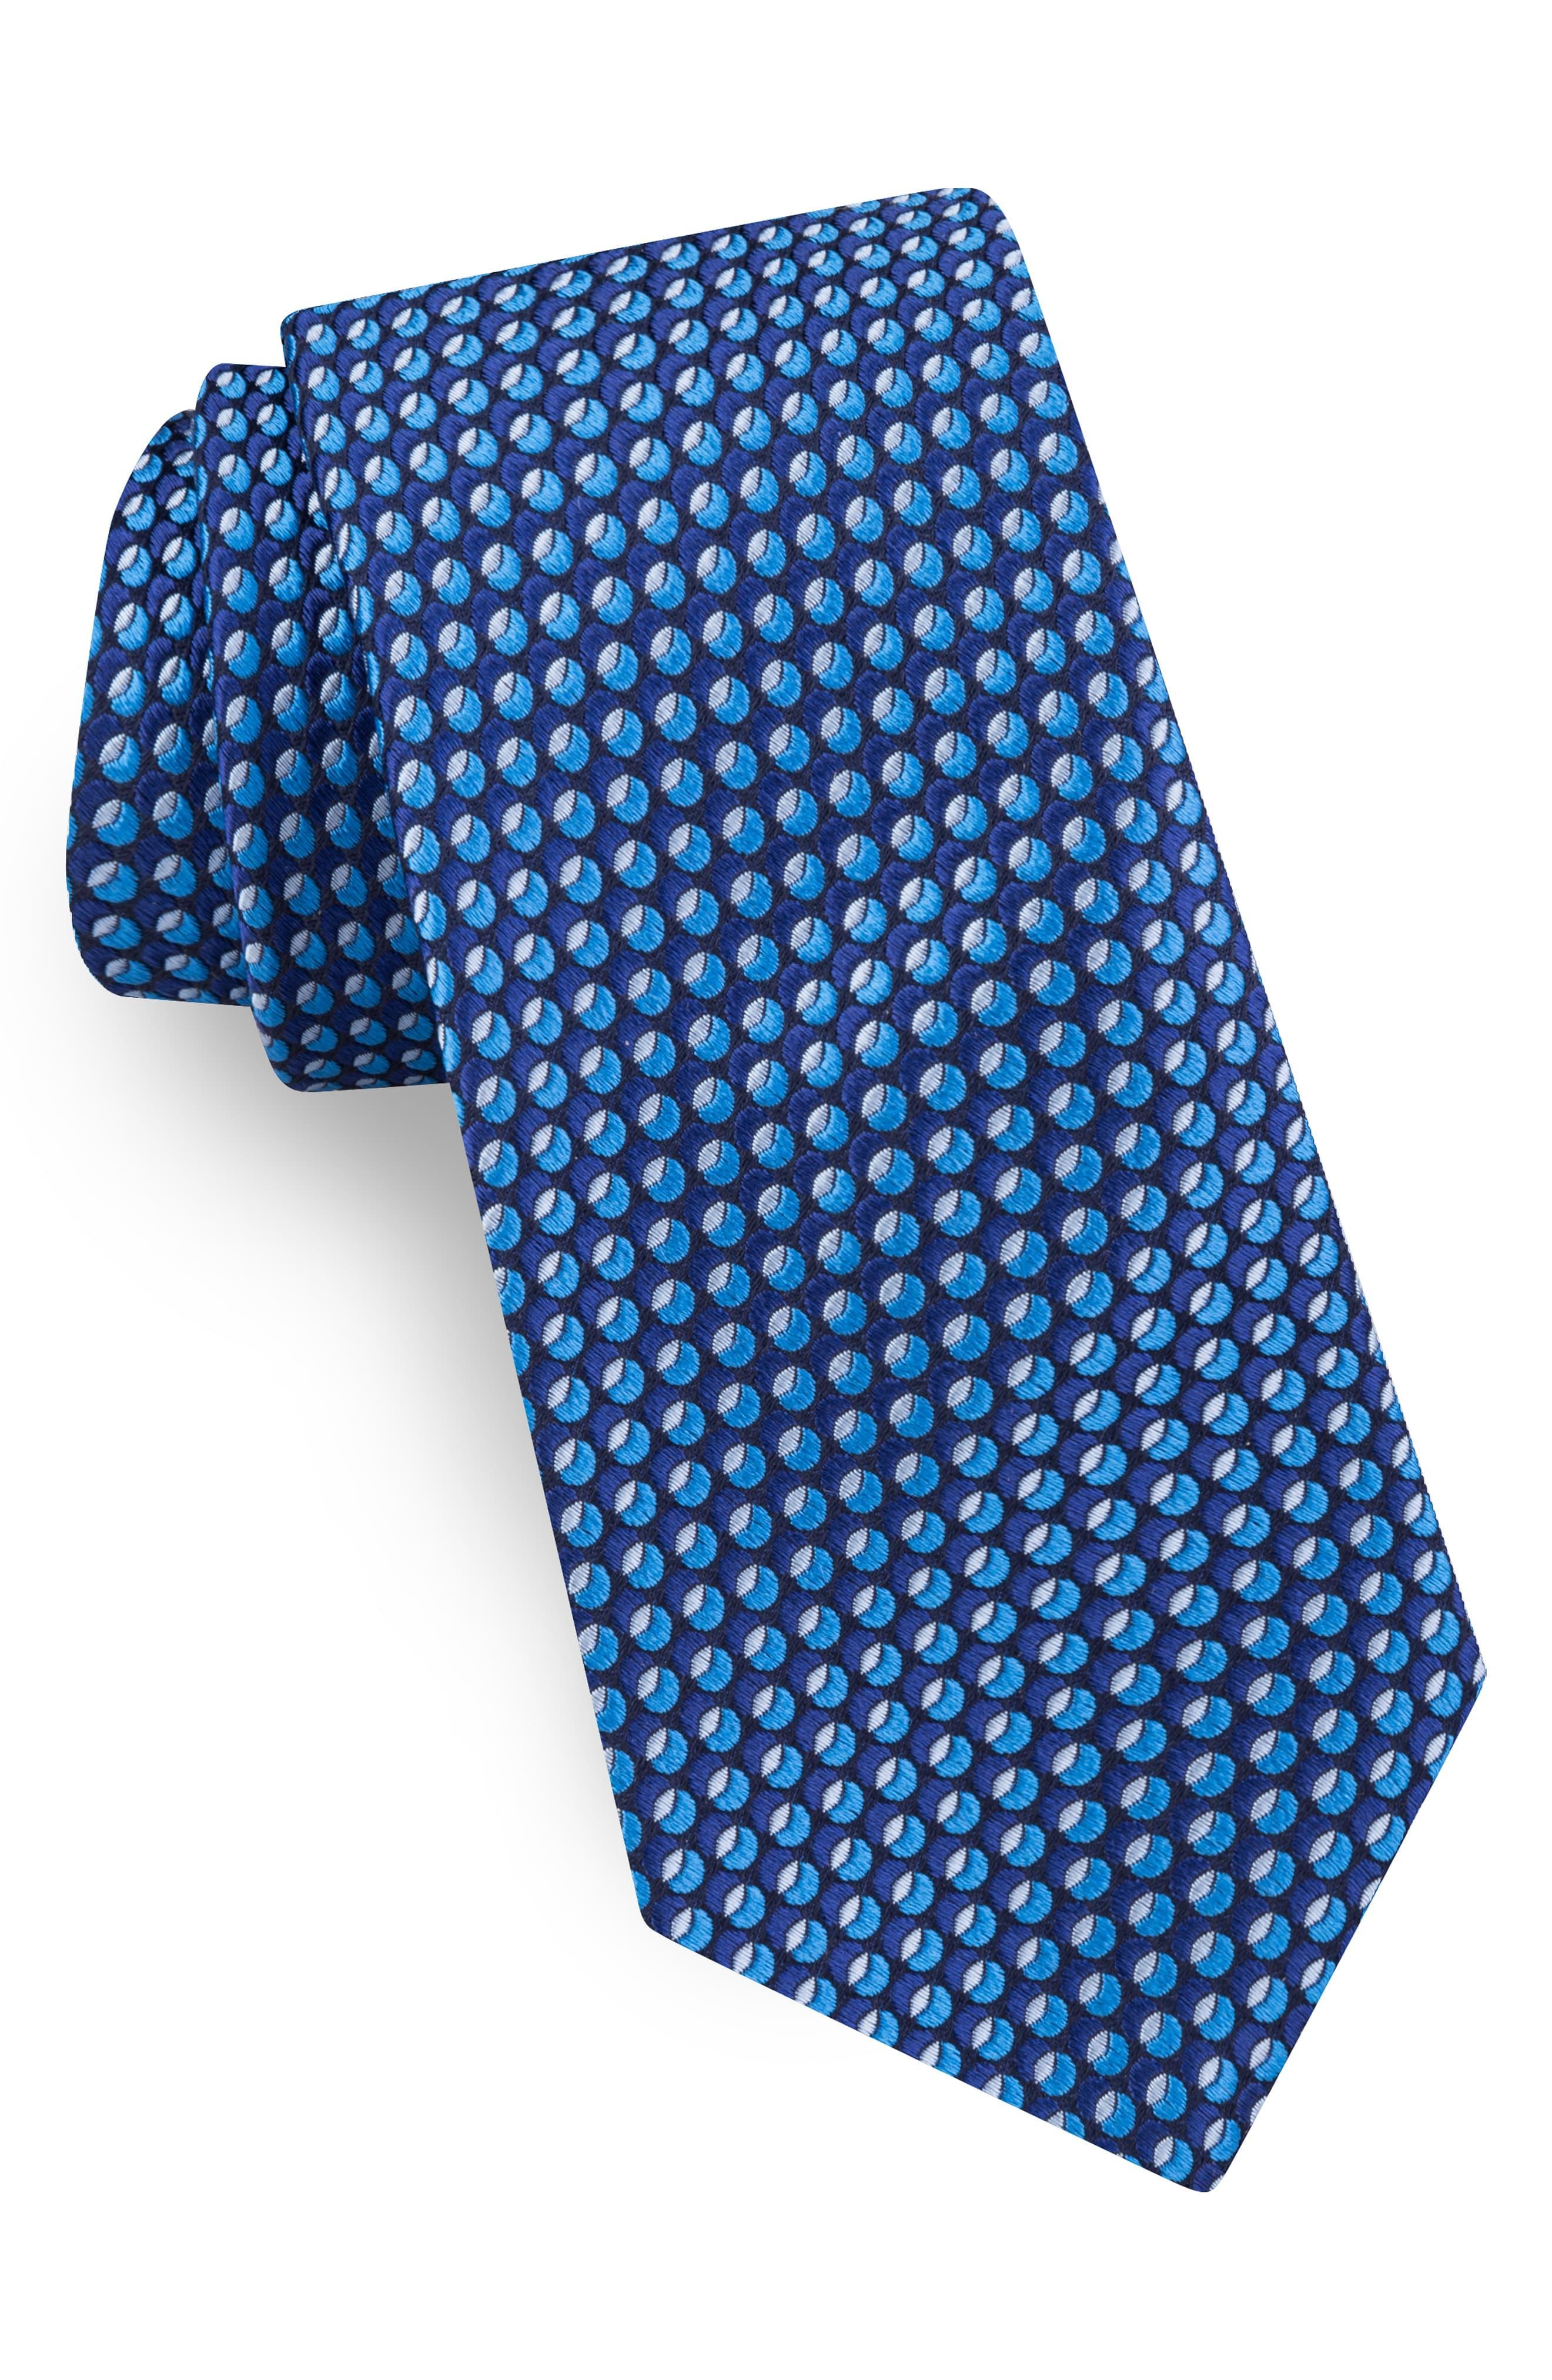 Ted Baker Geometric Oval Silk Tie in Blue for Men - Lyst